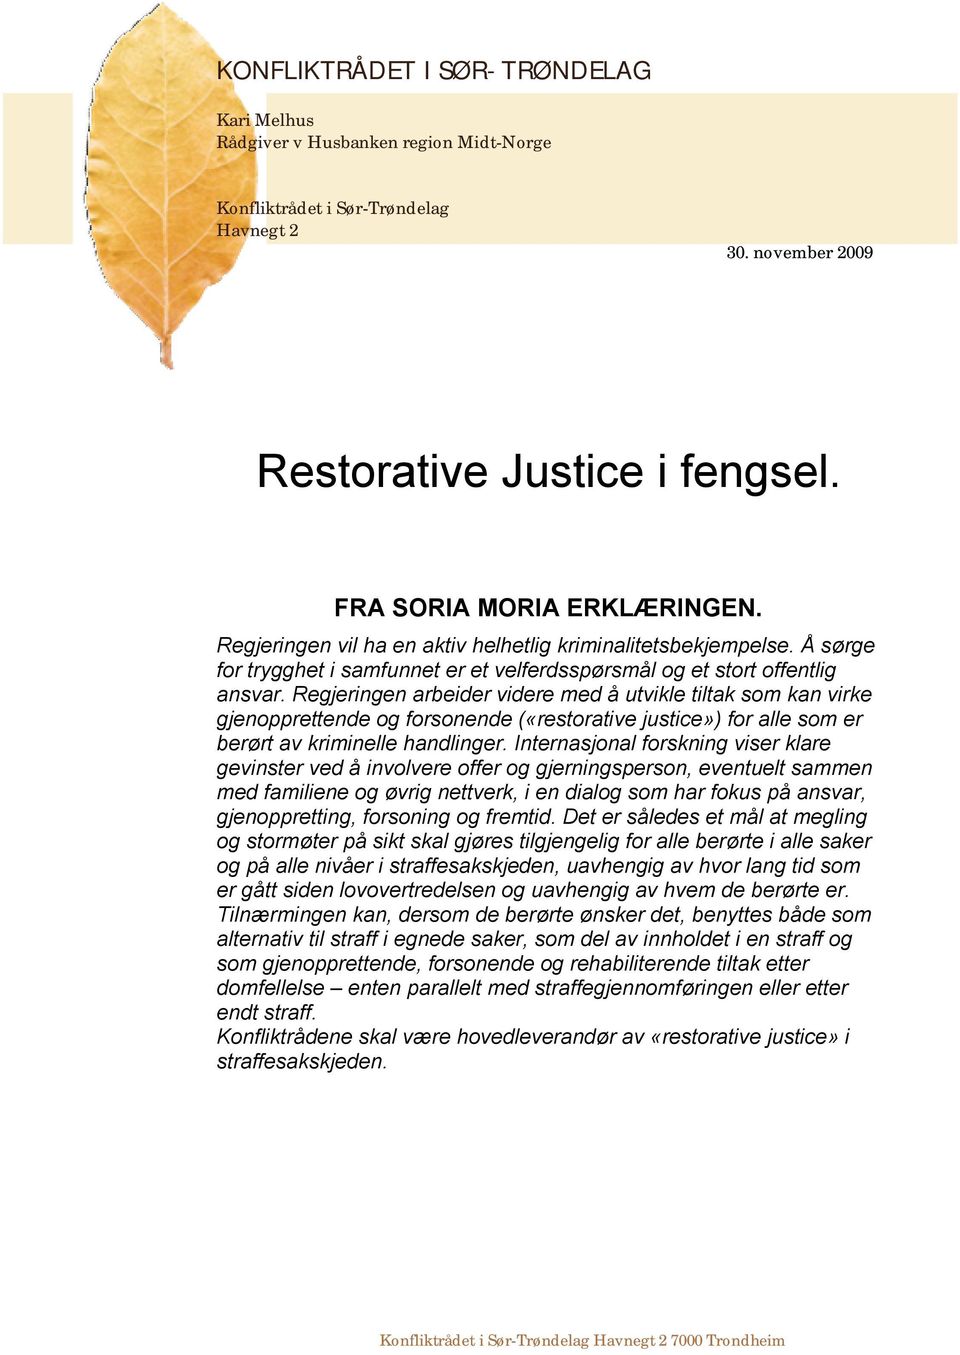 Regjeringen arbeider videre med å utvikle tiltak som kan virke gjenopprettende og forsonende («restorative justice») for alle som er berørt av kriminelle handlinger.